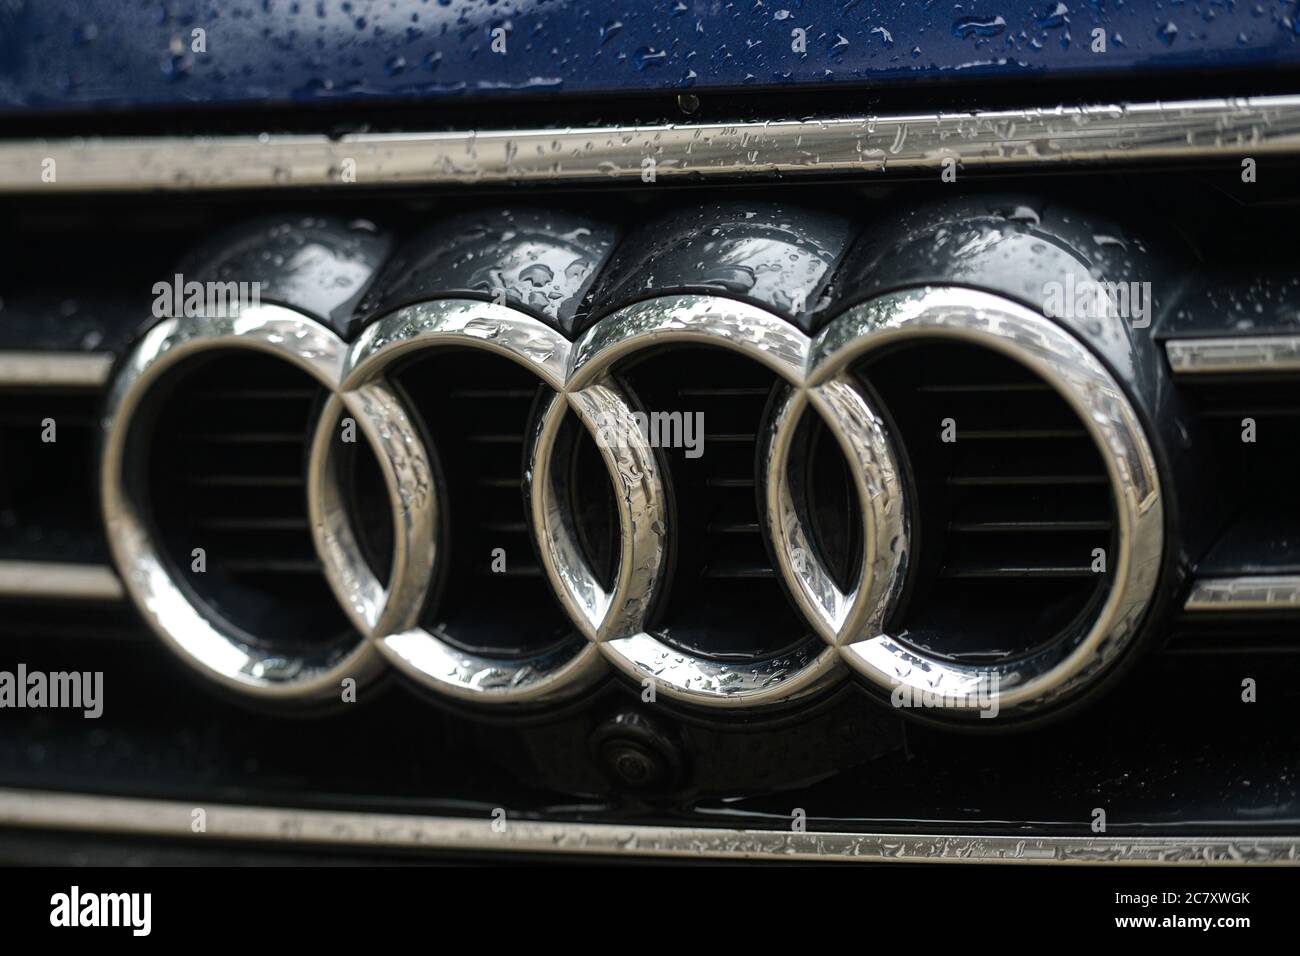 Un logo d'une Audi, un constructeur automobile multinational allemand, vu sur une voiture garée à Cracovie. Banque D'Images